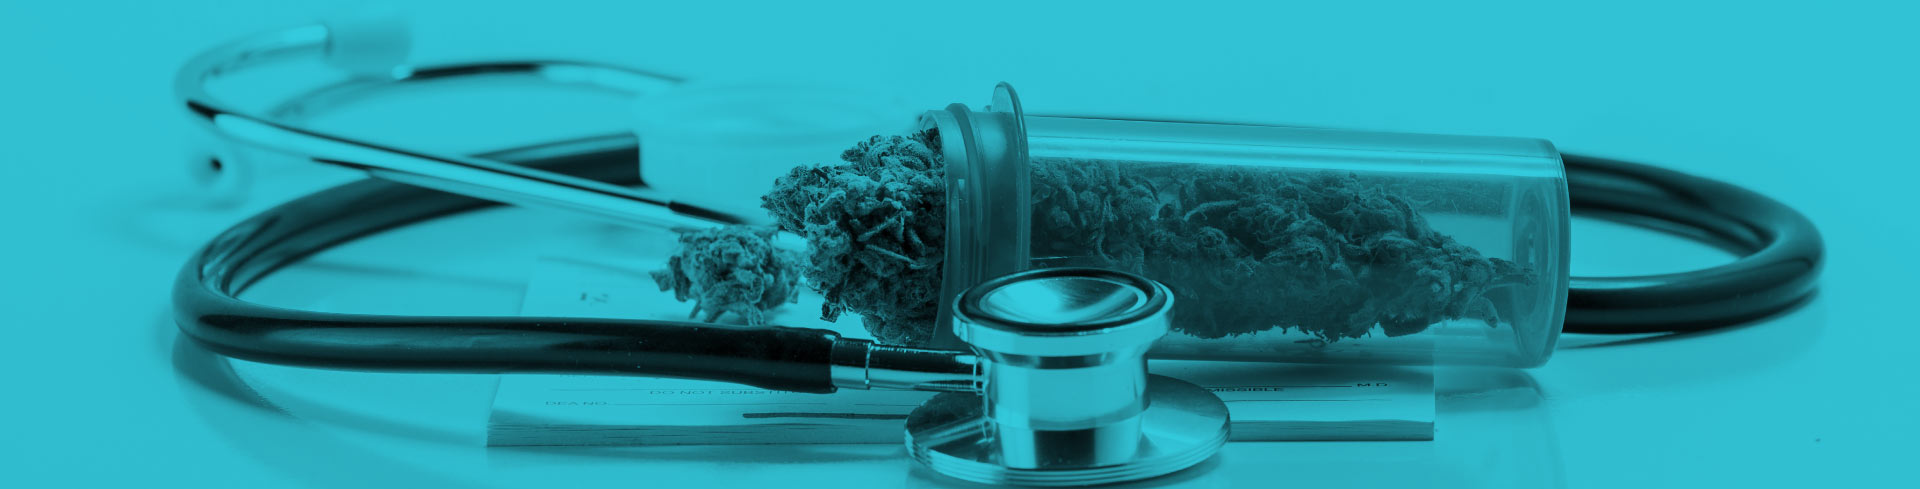 Usos medicinales del cannabis